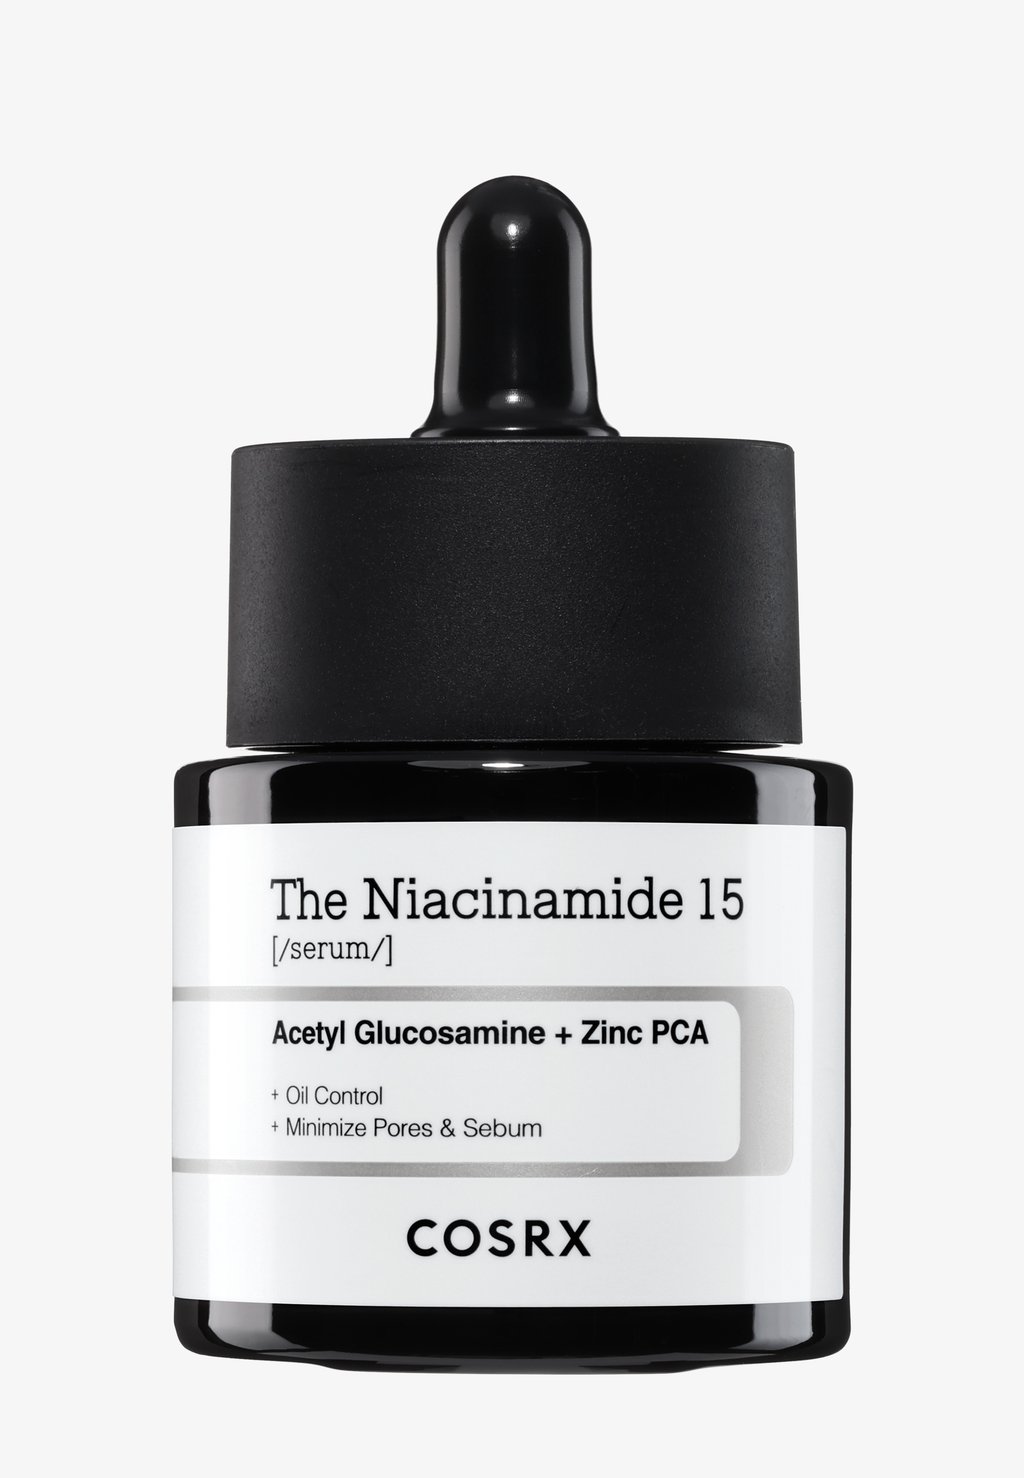 Сыворотка The Niacinamide 15 Serum COSRX cosrx the niacinamide 15 serum 20ml